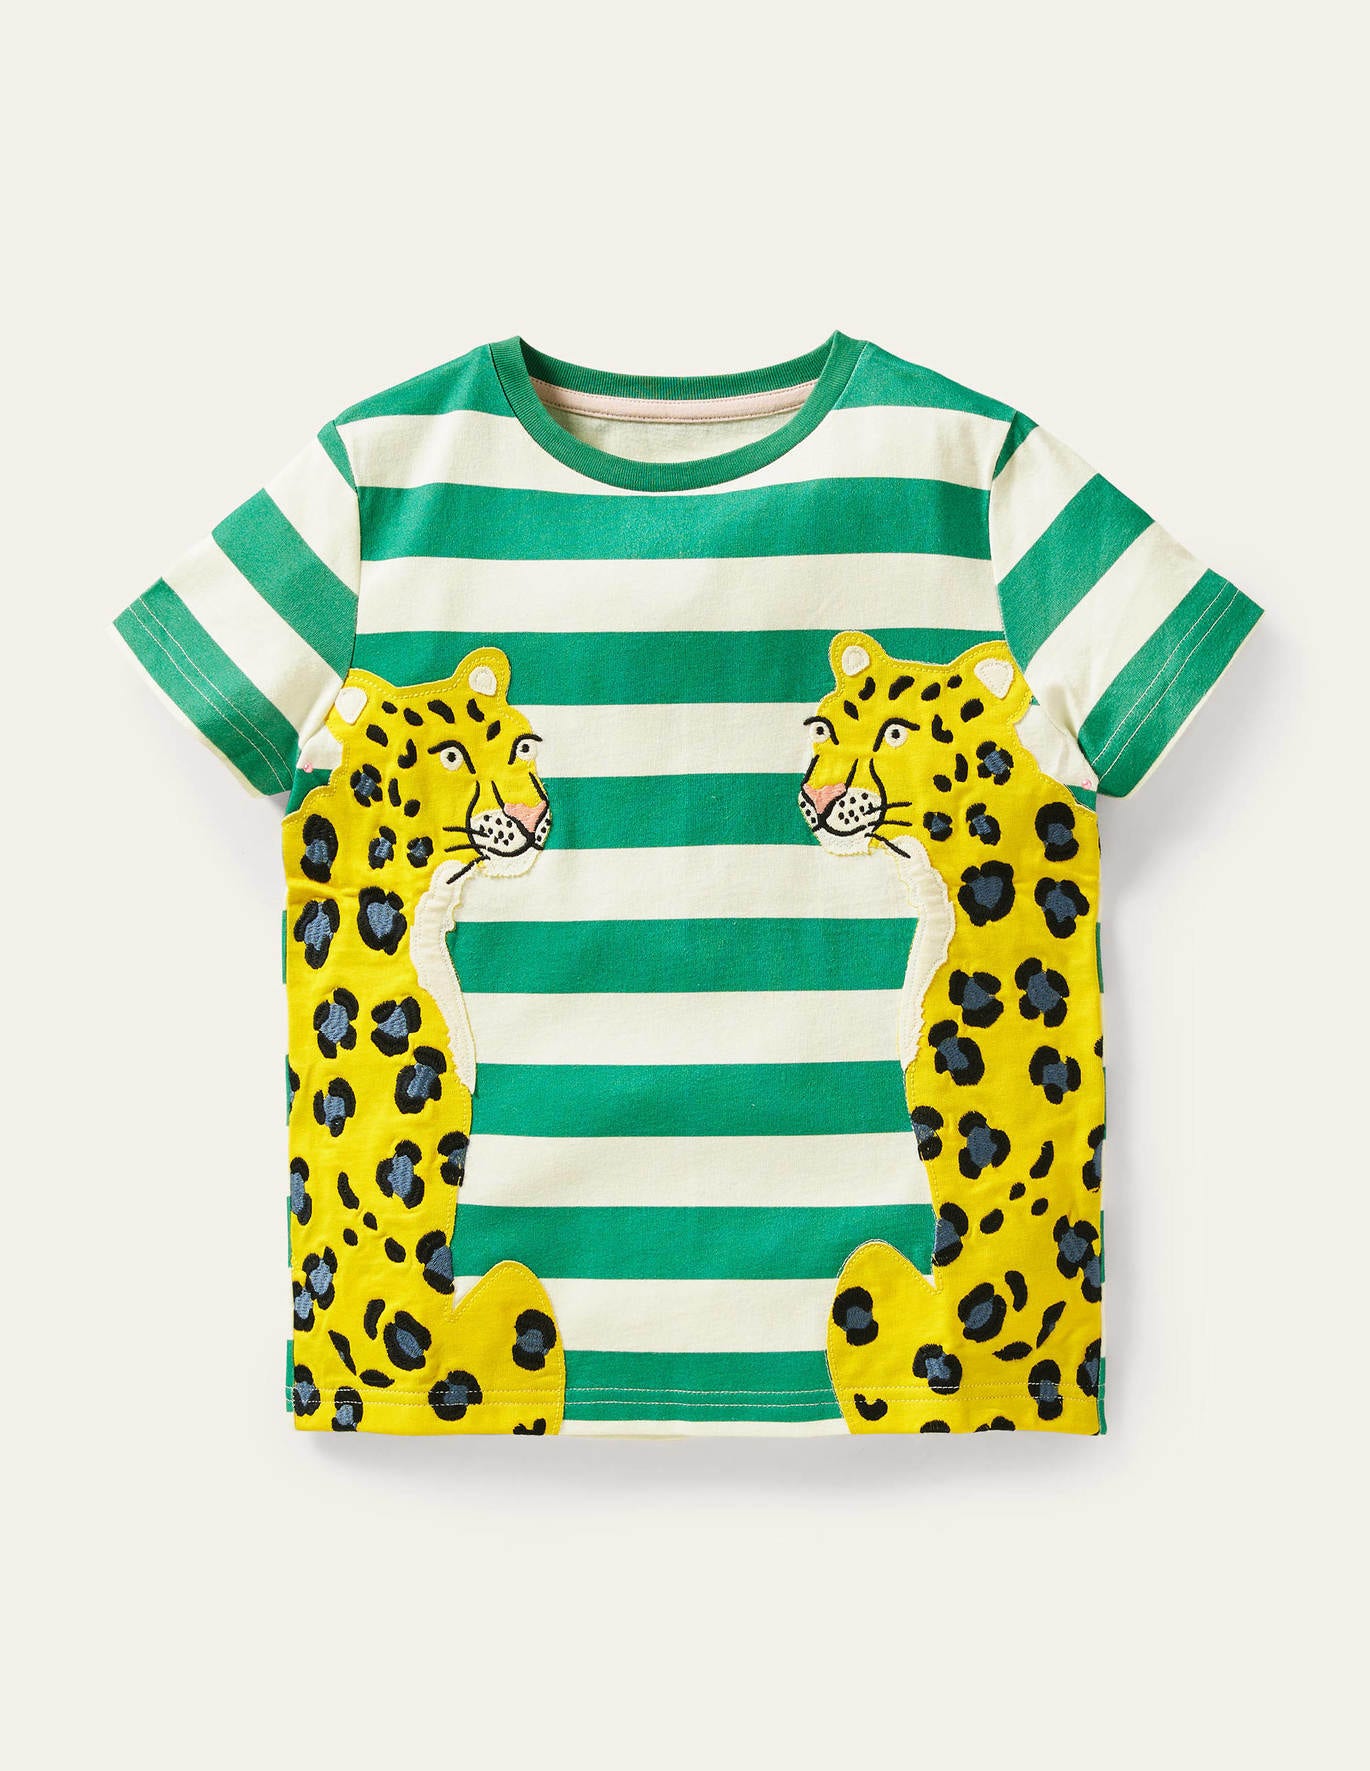 Boden Big Cat Applique T-shirt - Green Pepper Cheetahs